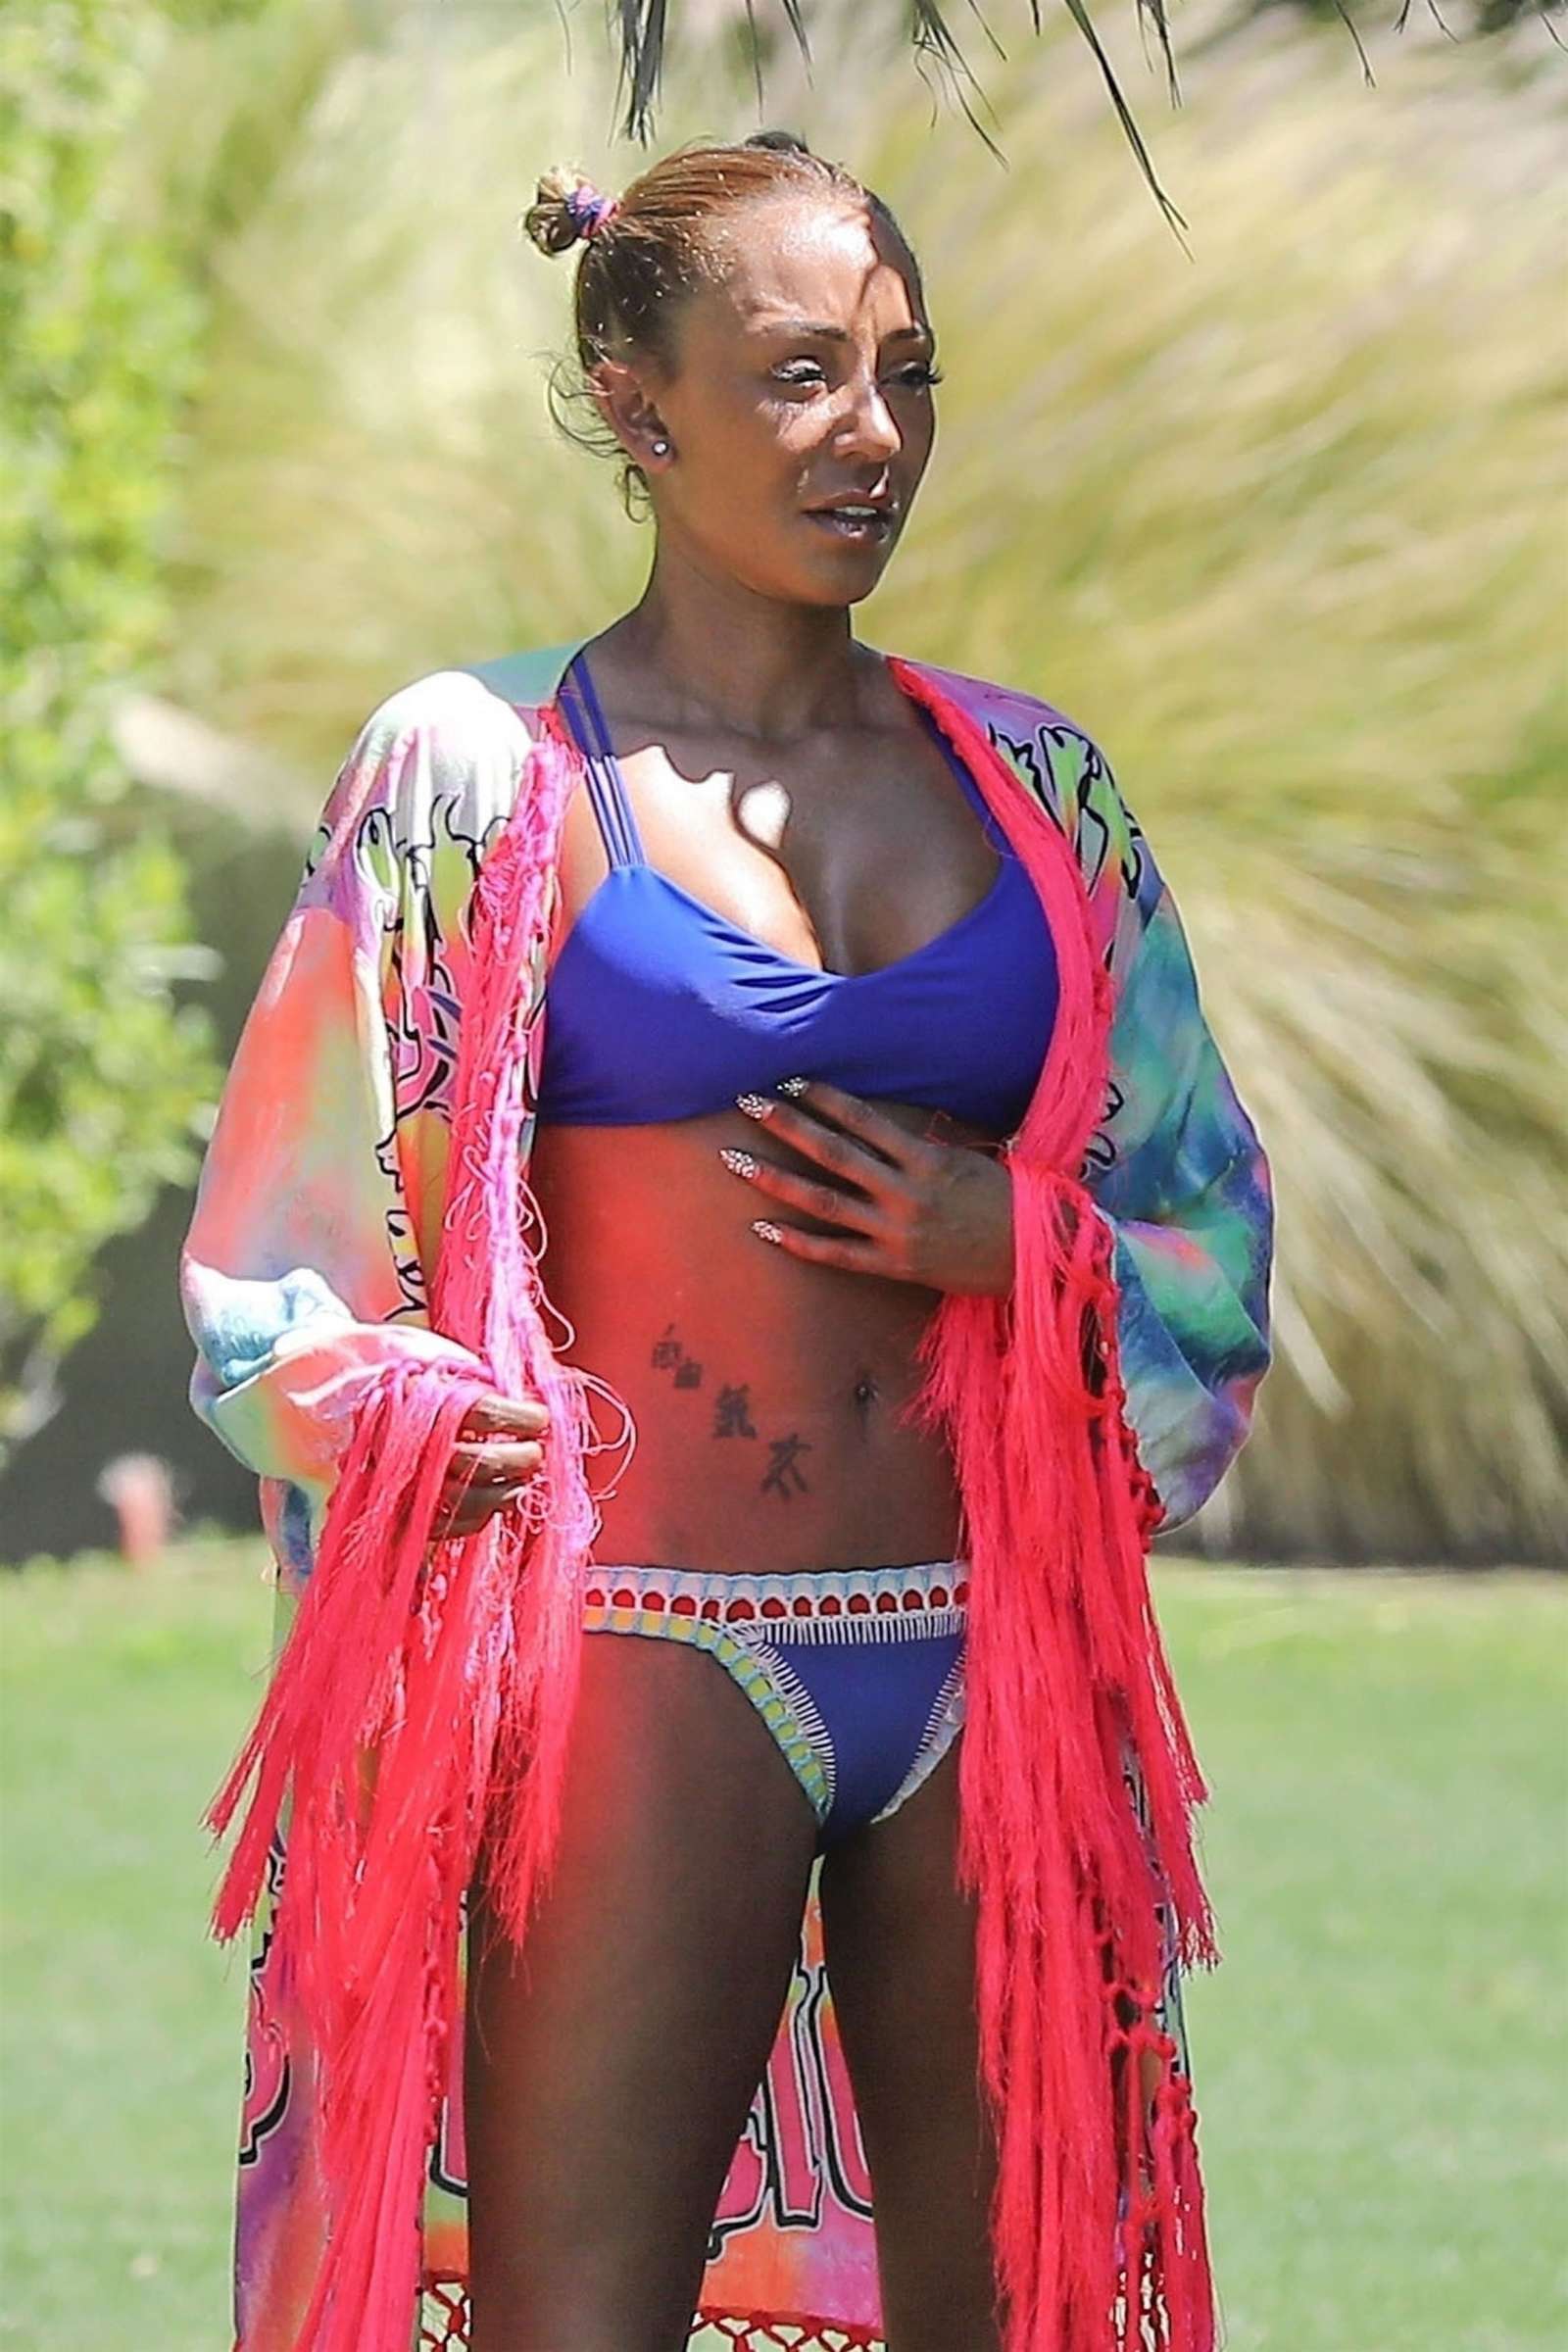 Melanie Brown in Blue Bikini on the pool in Palm Springs